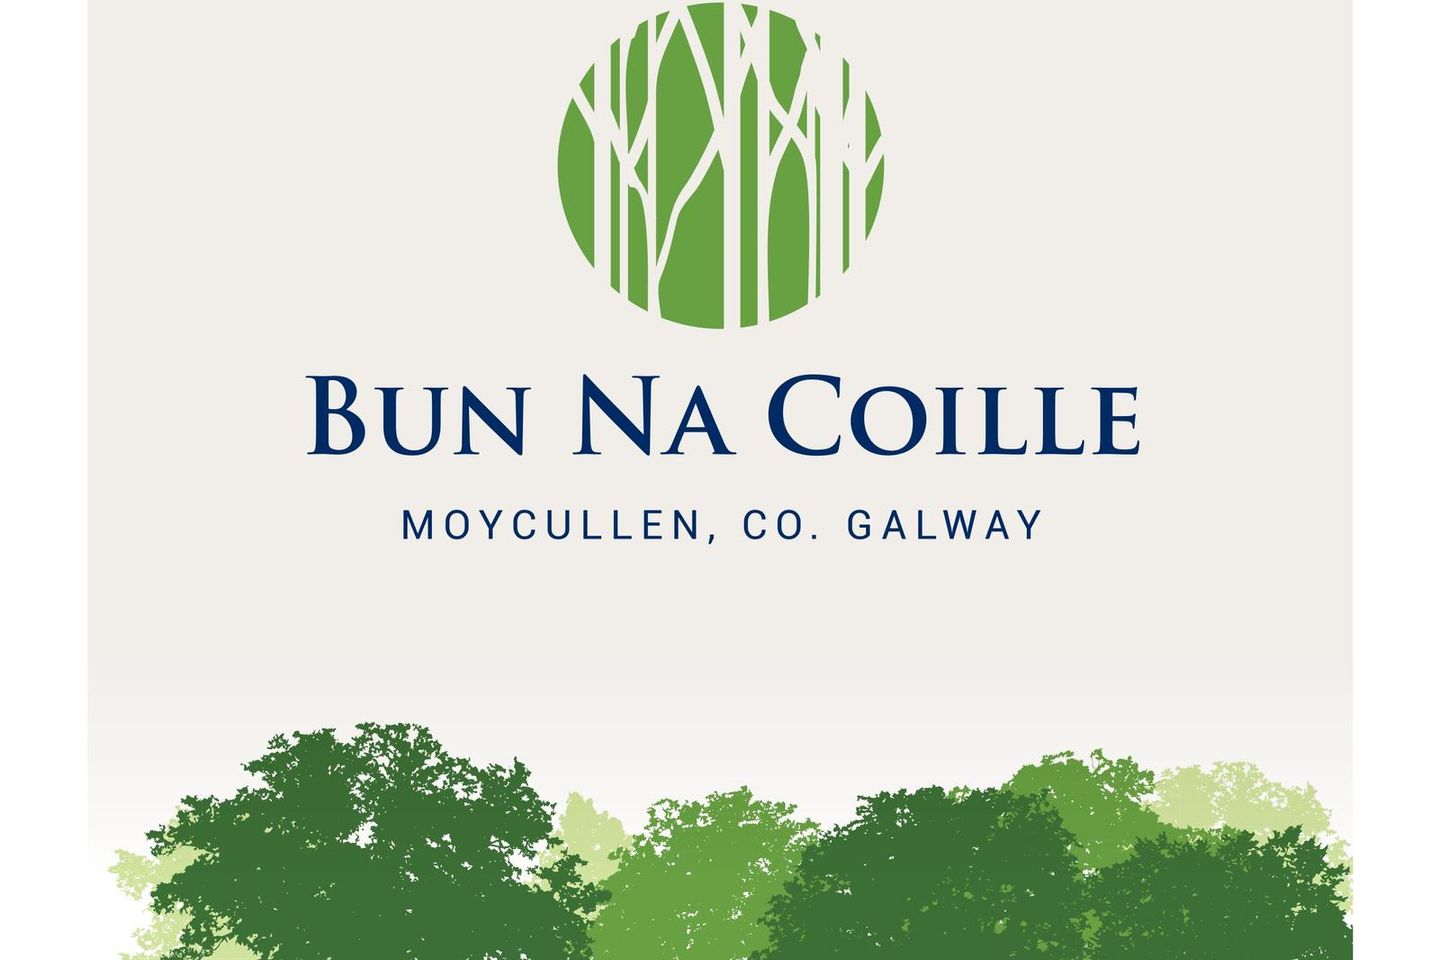 Type F, Bun Na Coille, Bun Na Coille, Moycullen, Moycullen, Co. Galway